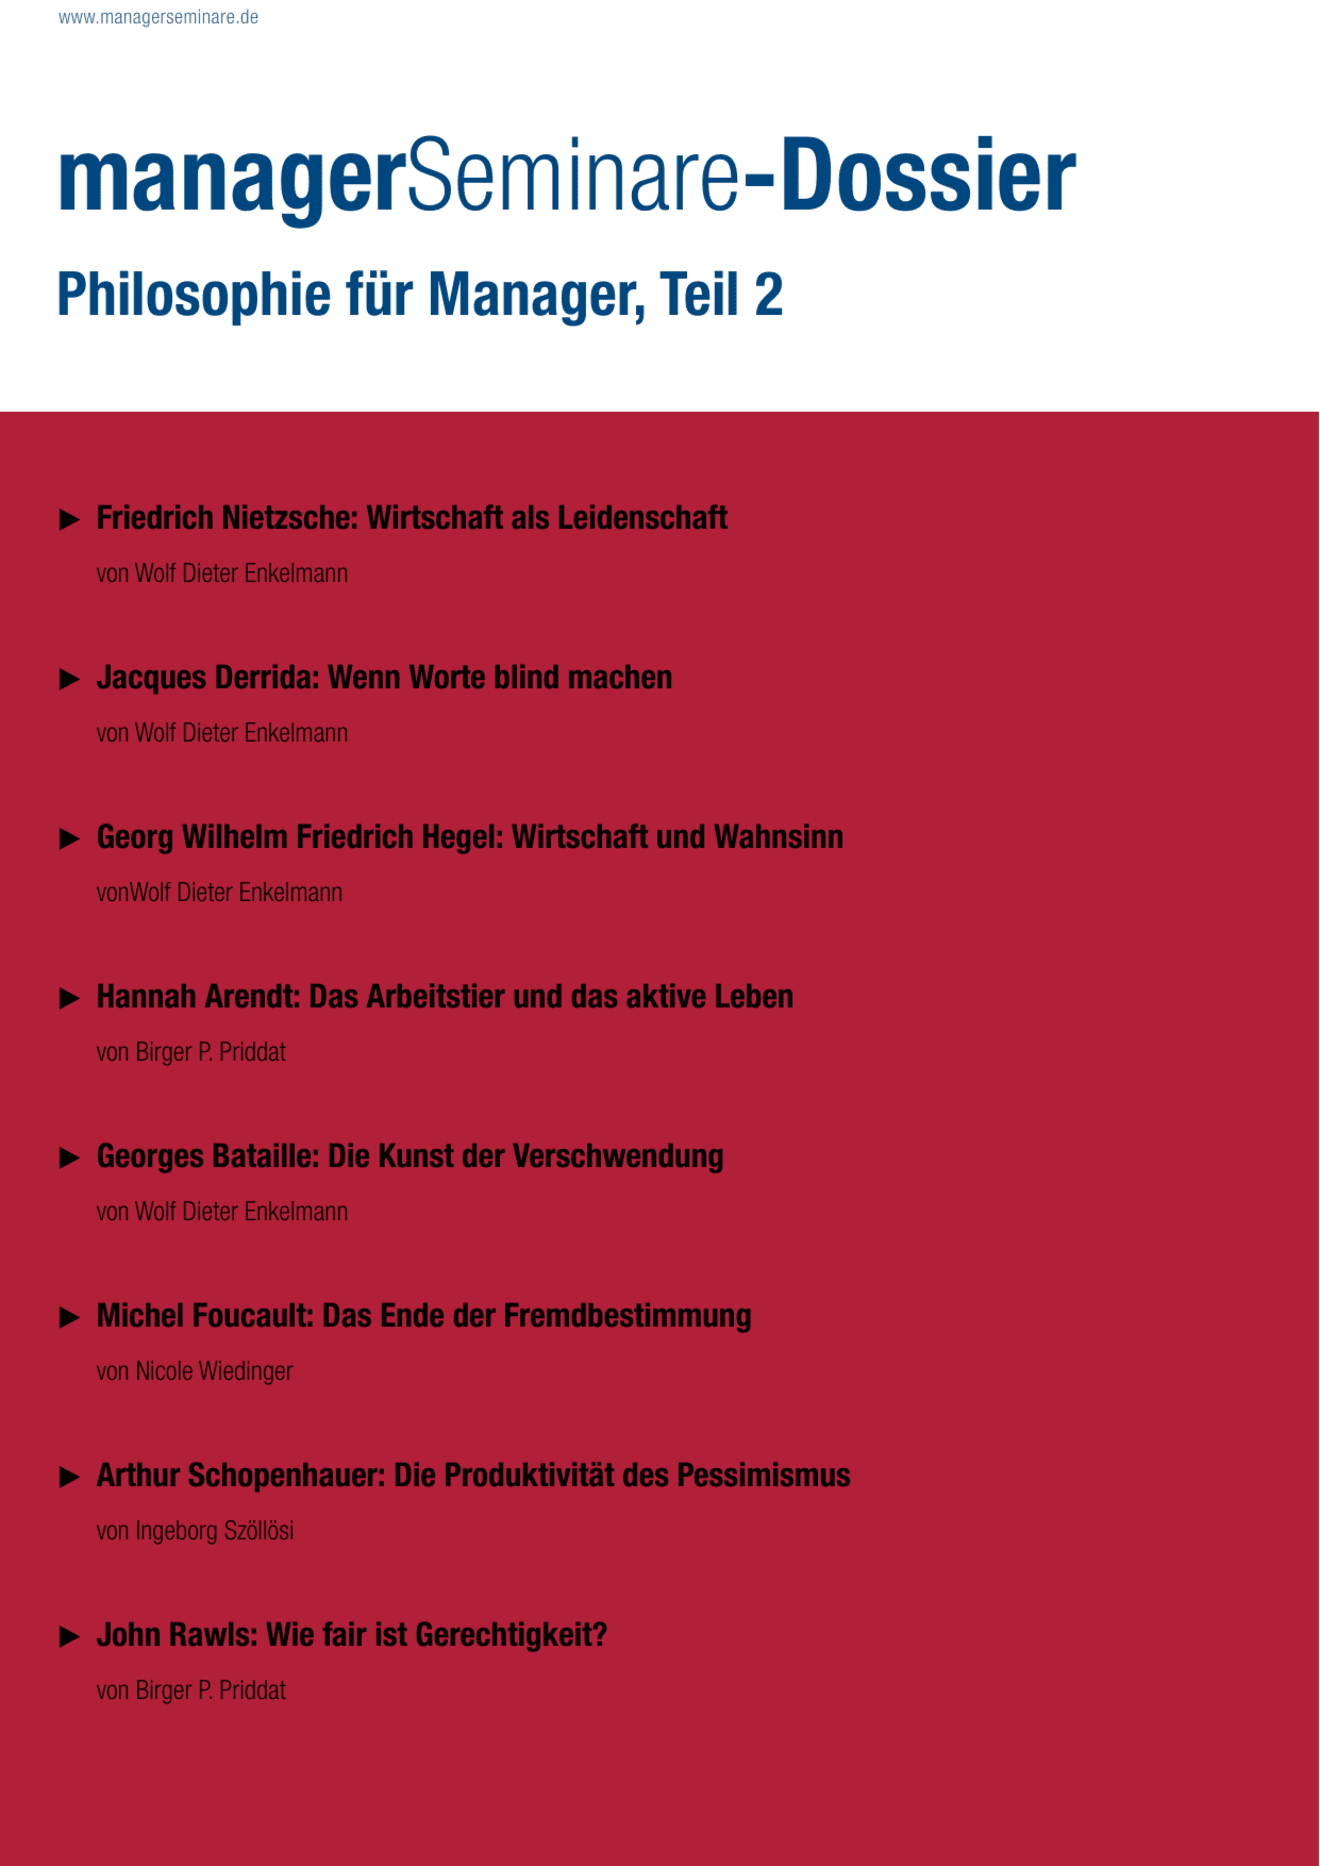 Dossier Philosophie für Manager, Teil 2